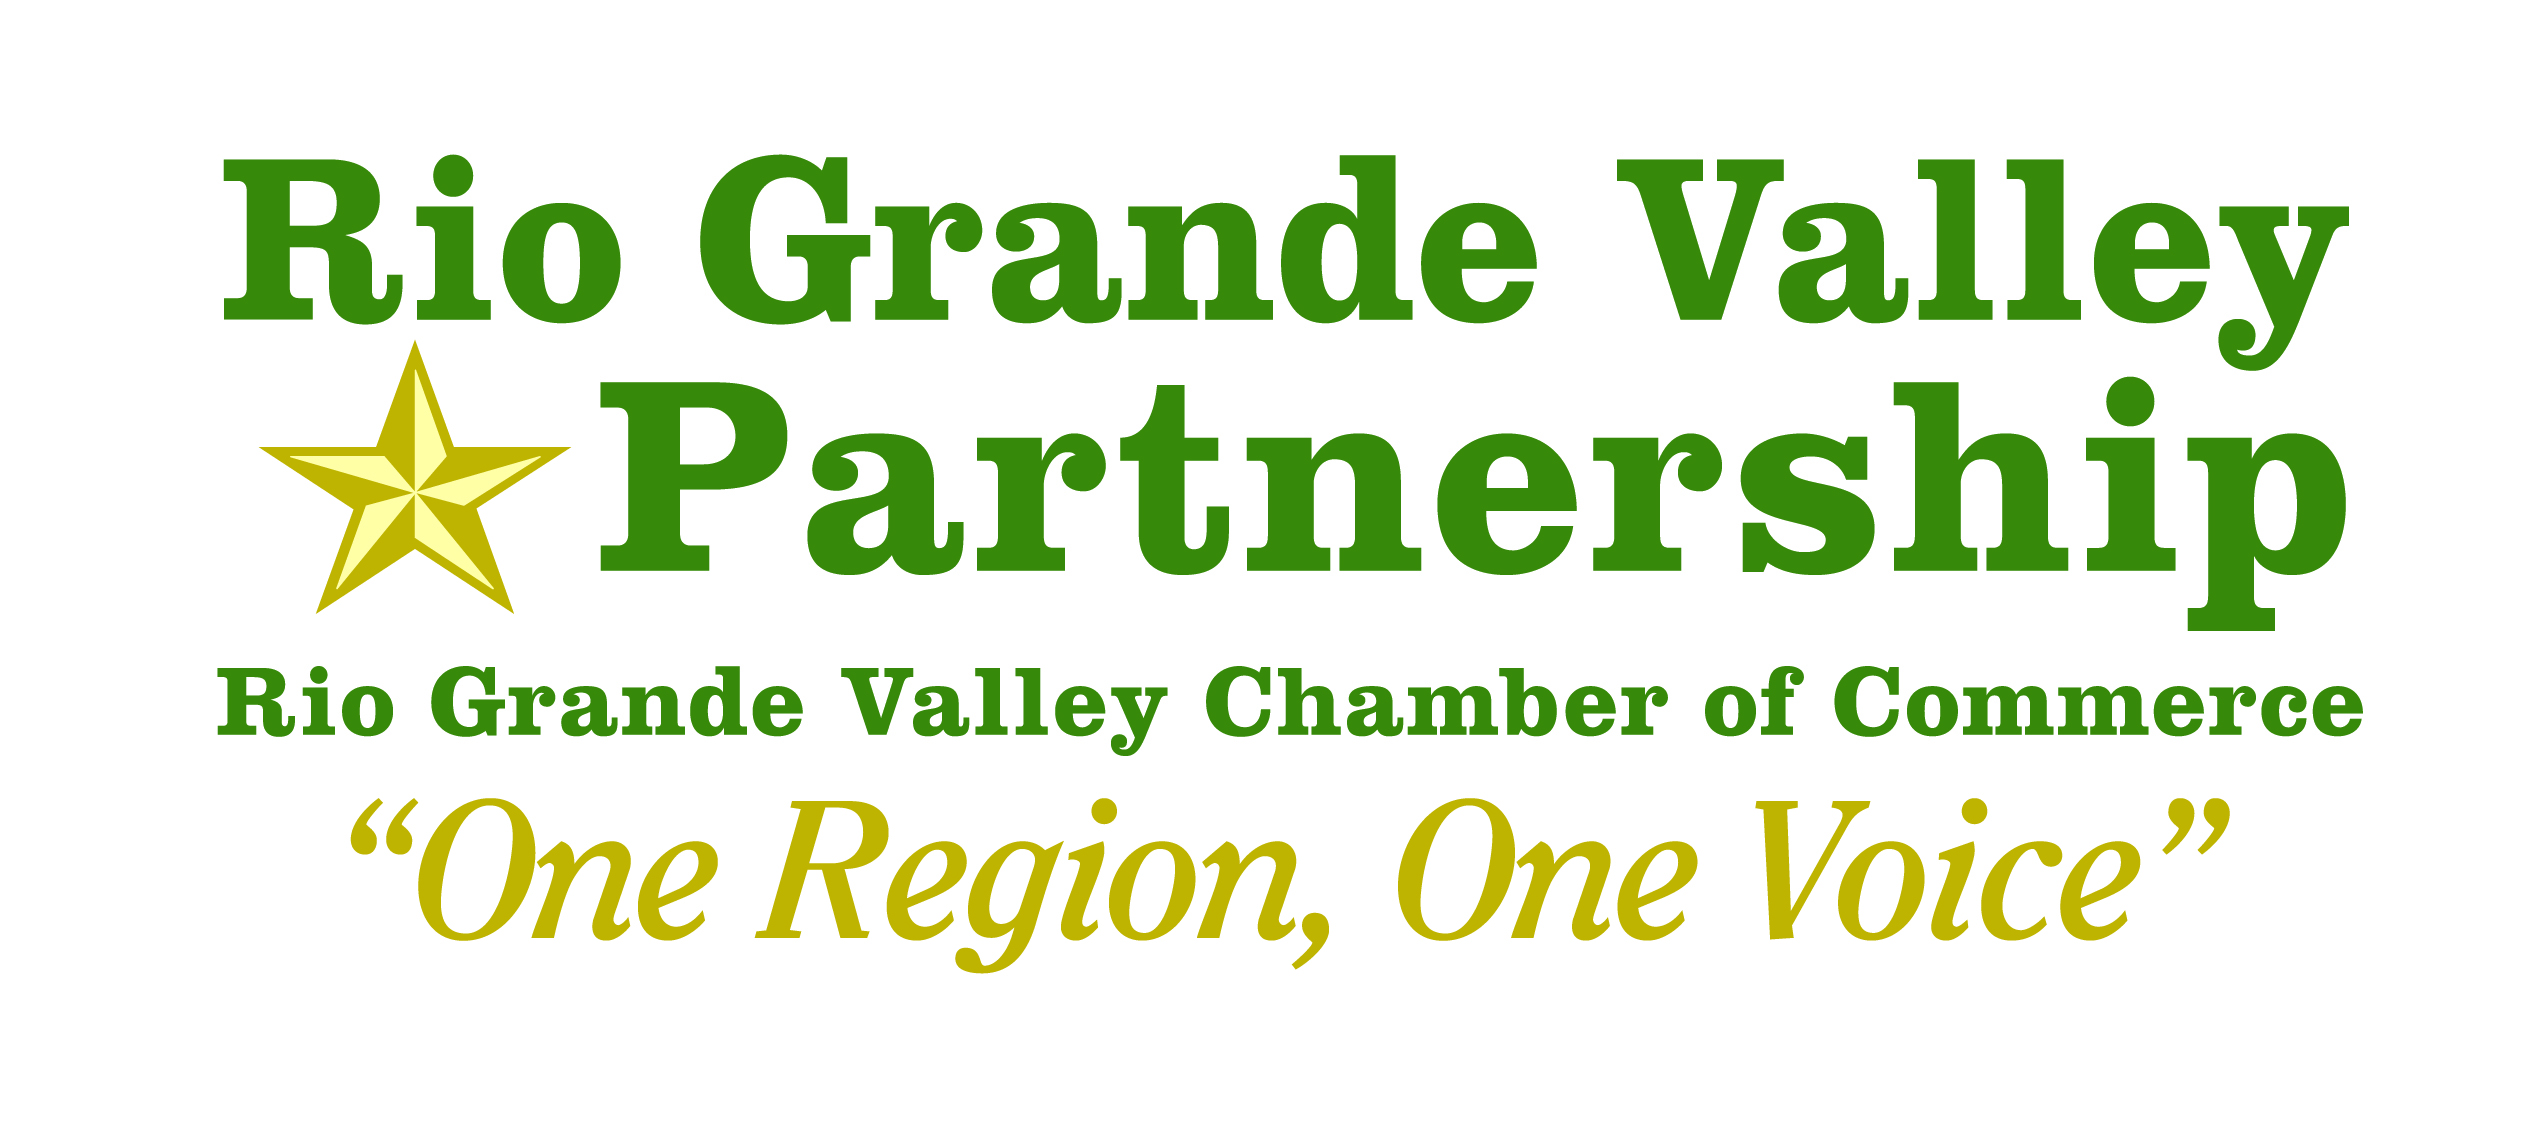 Rio Grande Valley Partnership